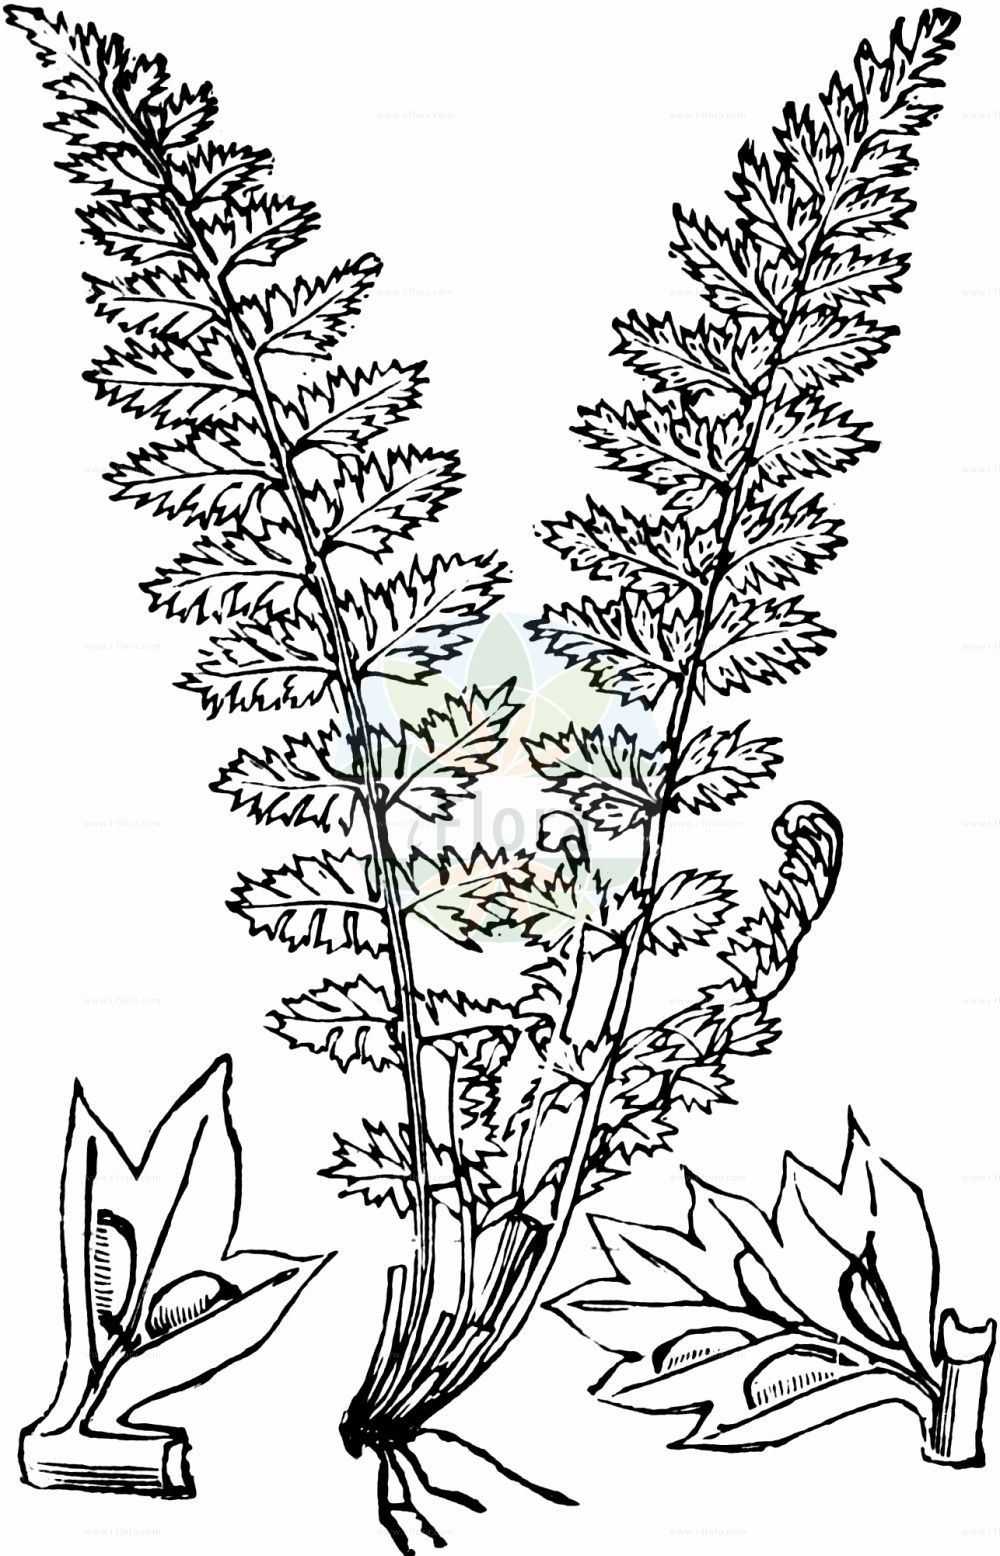 Historische Abbildung von Asplenium fontanum (Jura-Streifenfarn - Smooth Rock-spleenwort). Das Bild zeigt Blatt, Bluete, Frucht und Same. ---- Historical Drawing of Asplenium fontanum (Jura-Streifenfarn - Smooth Rock-spleenwort). The image is showing leaf, flower, fruit and seed.(Asplenium fontanum,Jura-Streifenfarn,Smooth Rock-spleenwort,Aspidium halleri,Asplenium fontanum,Asplenium halleri,Asplenium leptophyllum,Athyrium halleri,Polypodium fontanum,Jura-Streifenfarn,Smooth Rock-spleenwort,Black Forest Spleenwort,Asplenium,Streifenfarn,Spleenwort,Aspleniaceae,Streifenfarngewächse,Spleenworts,Blatt,Bluete,Frucht,Same,leaf,flower,fruit,seed,Fitch et al. (1880))